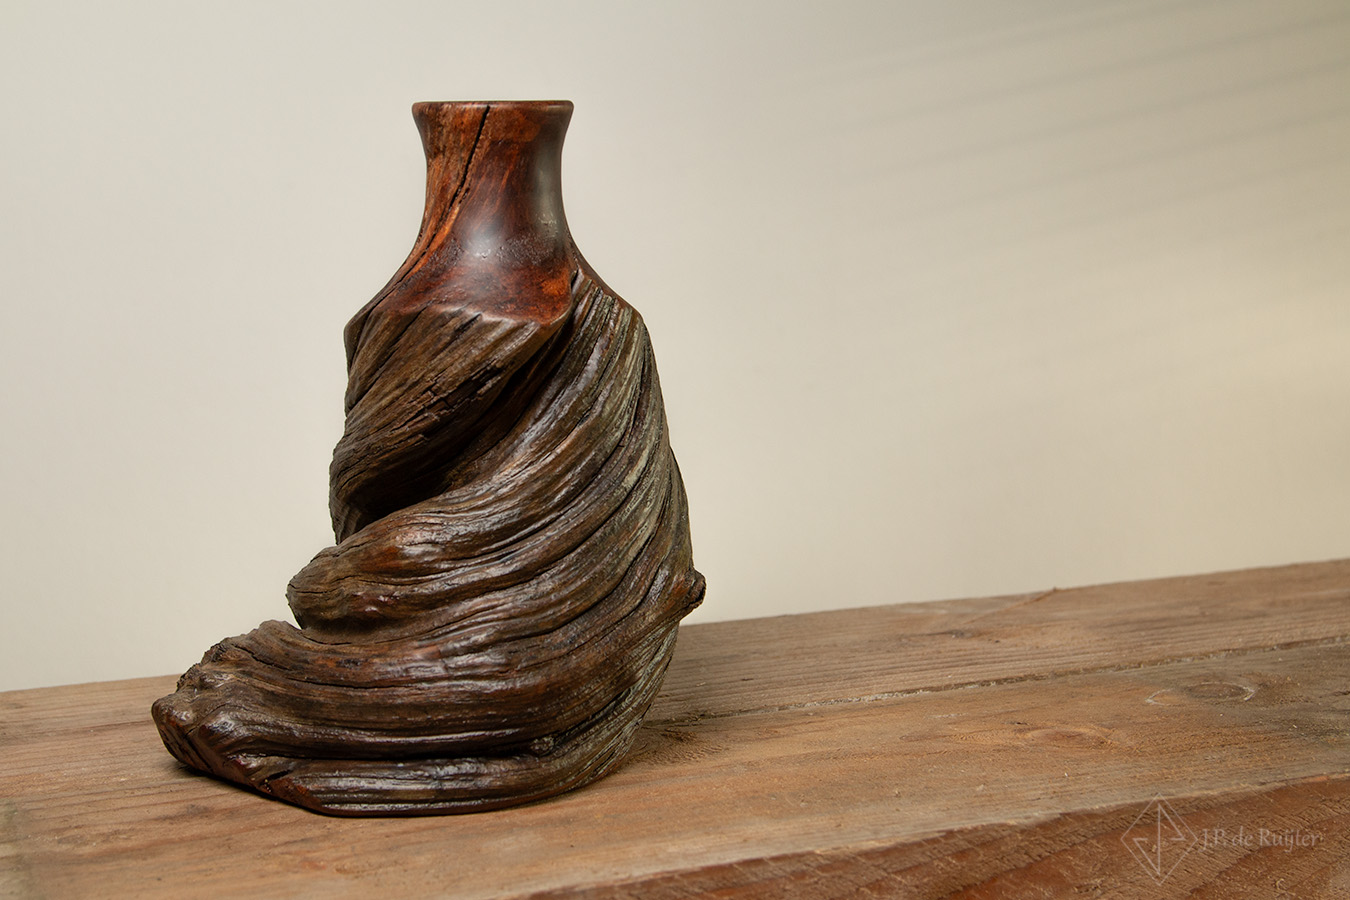 Vaas van oud hout, past in een brocante landelijke maar ook sober en stoere woonkstijl. Door de natuurlijke vorm met de gedraaide hals kan je het ook tot wabi sabi benoemen. Een bijzonder en uniek stukje kunst. 